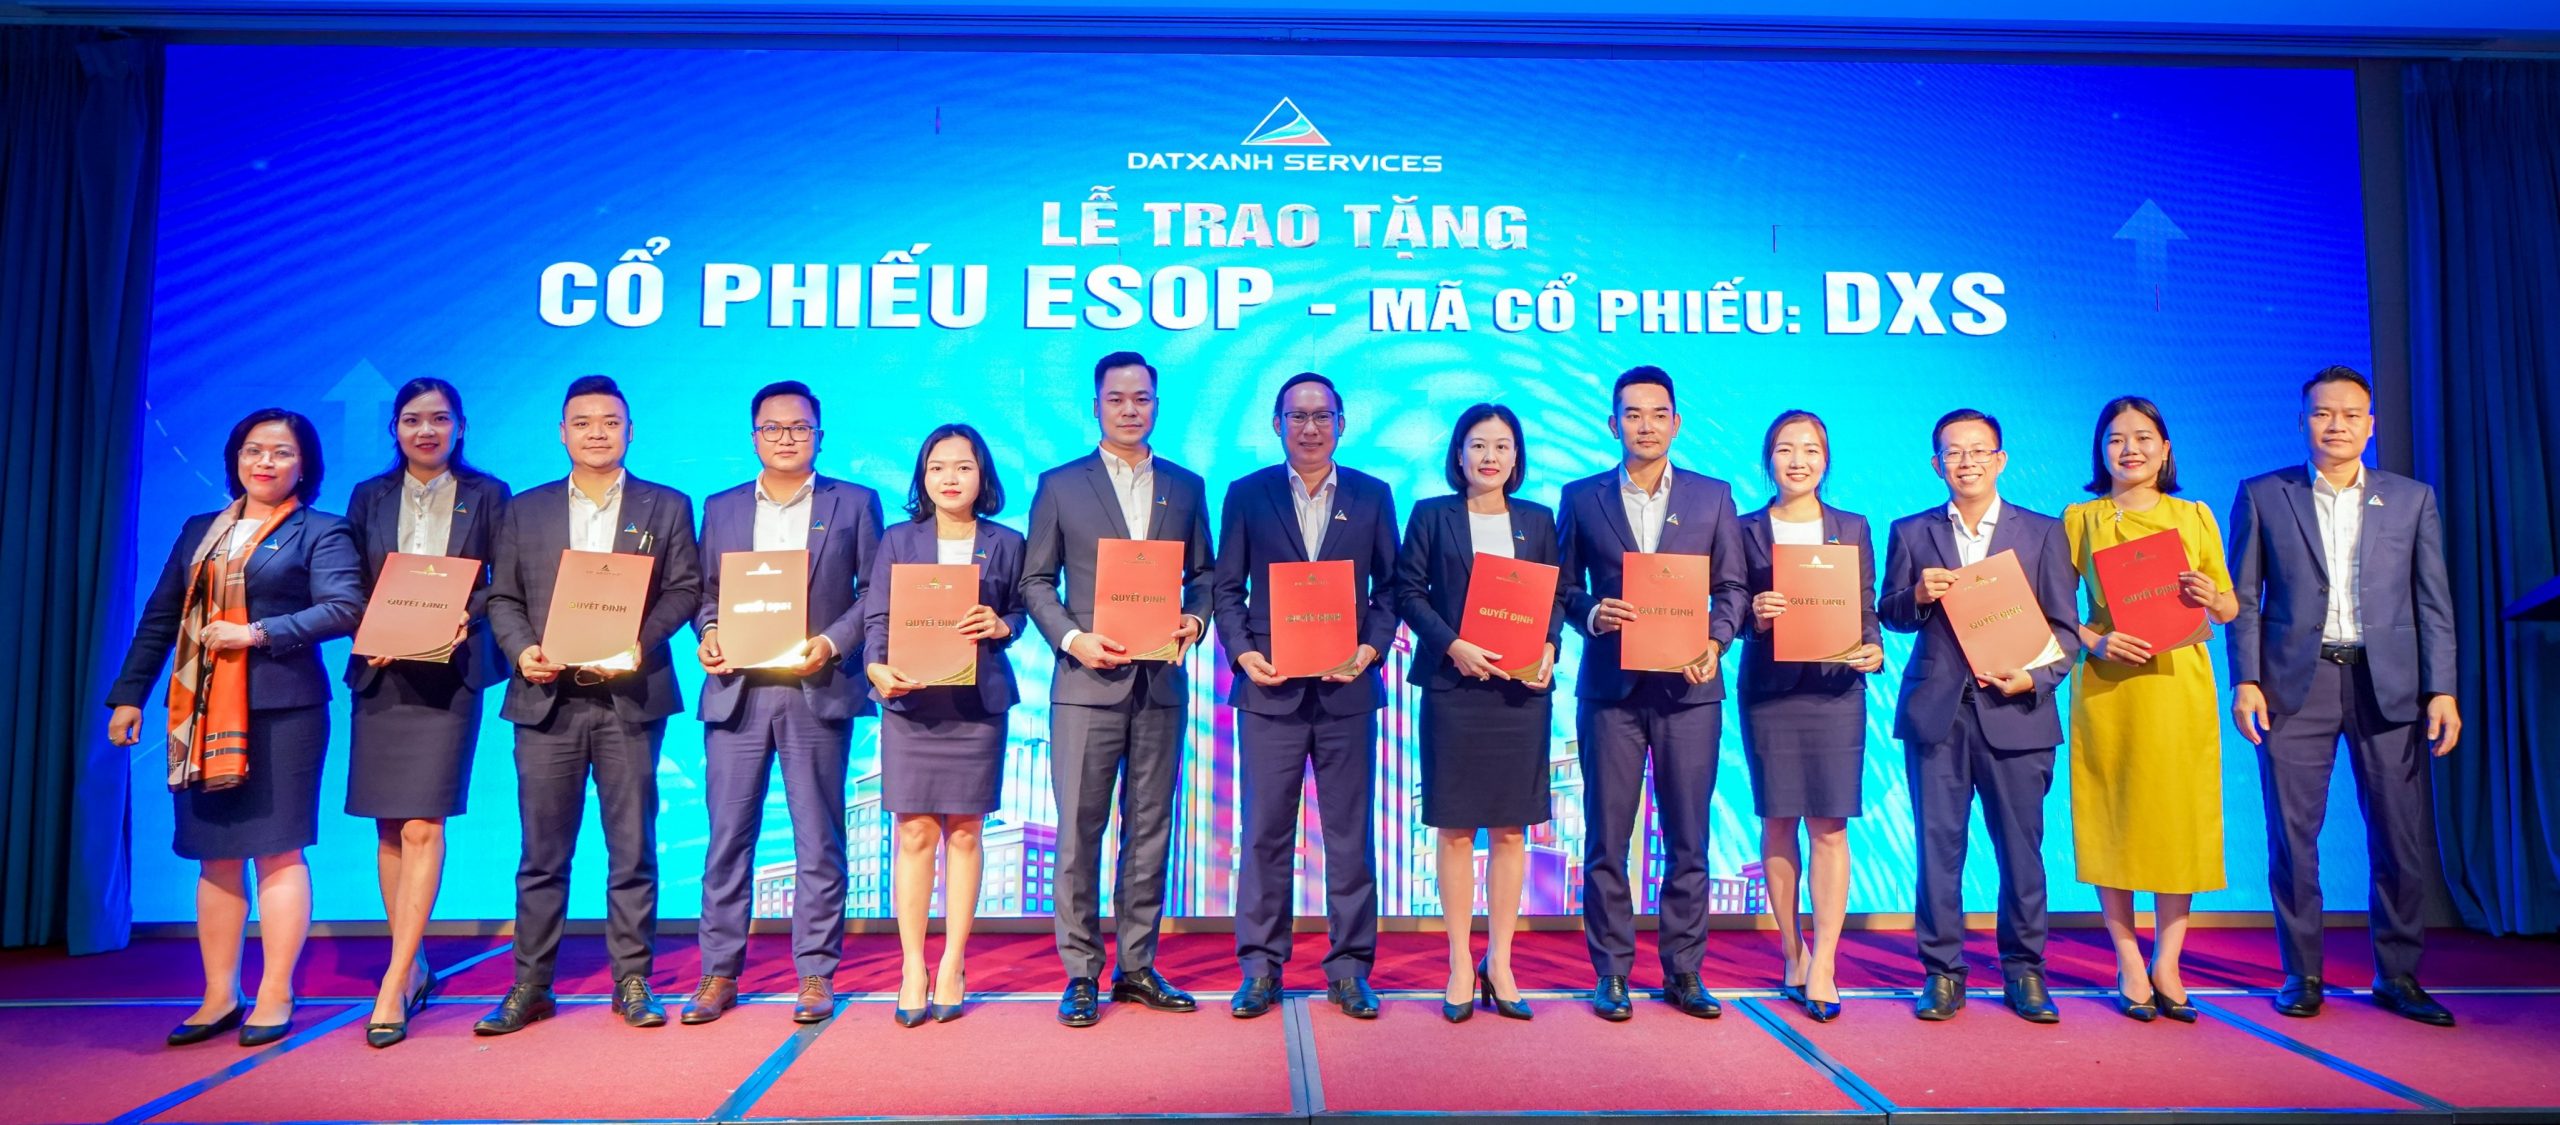 Chủ Tịch HĐQT Ông Nguyễn Trường Sơn và TGĐ Bà Phạm Thị Nguyên Thanh trao tặng cổ phiếu ESOP cho Ban Điều hành.